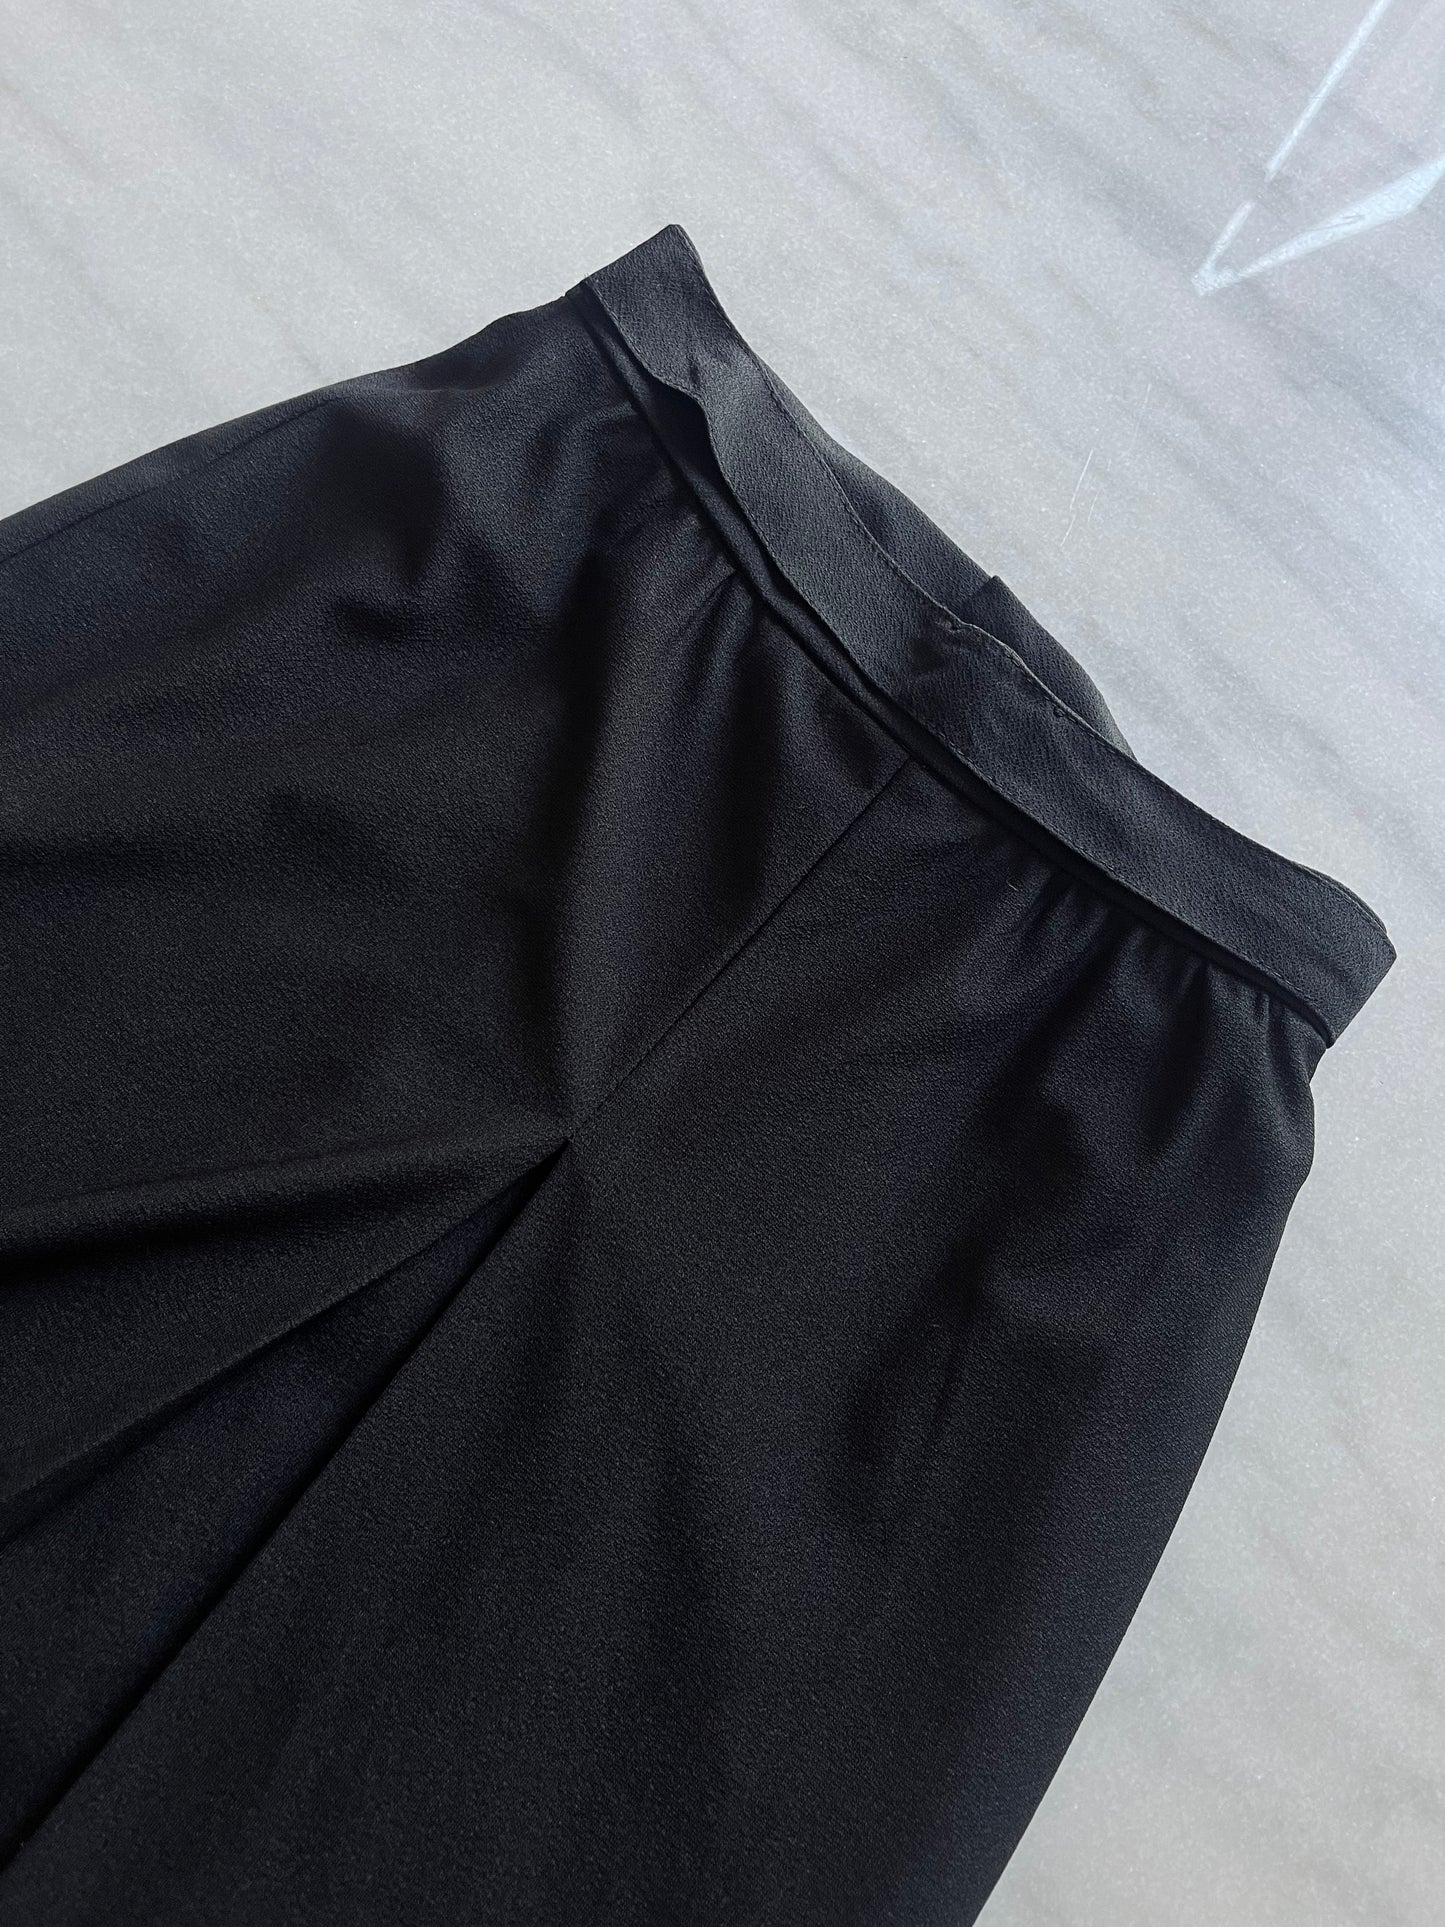 The long black skirt